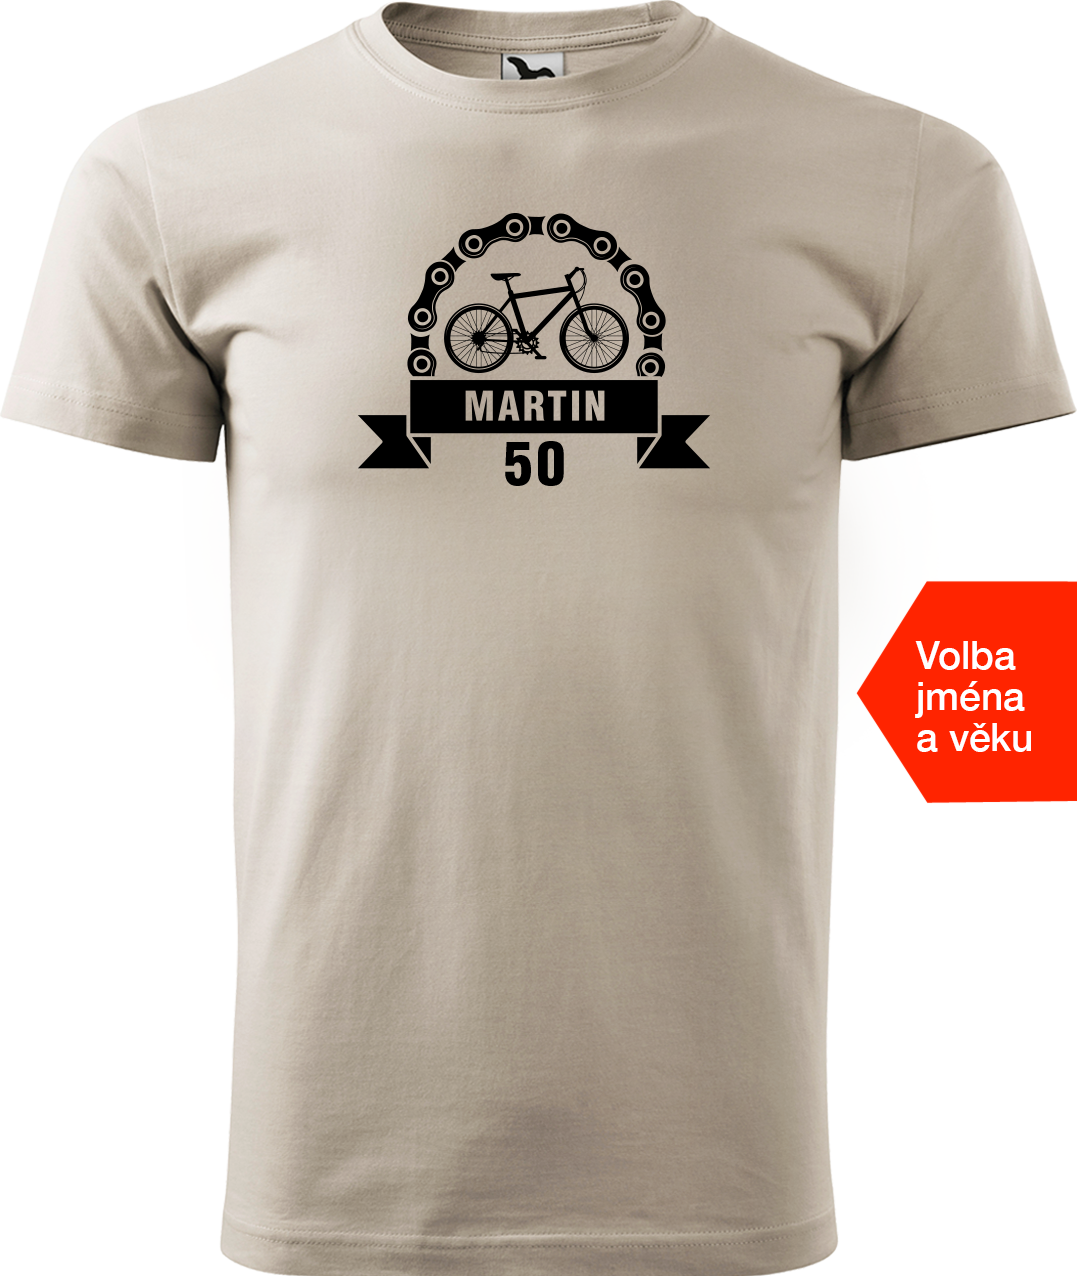 Pánské tričko pro cyklistu se jménem a věkem - Blahopřání Velikost: XL, Barva: Béžová (51)